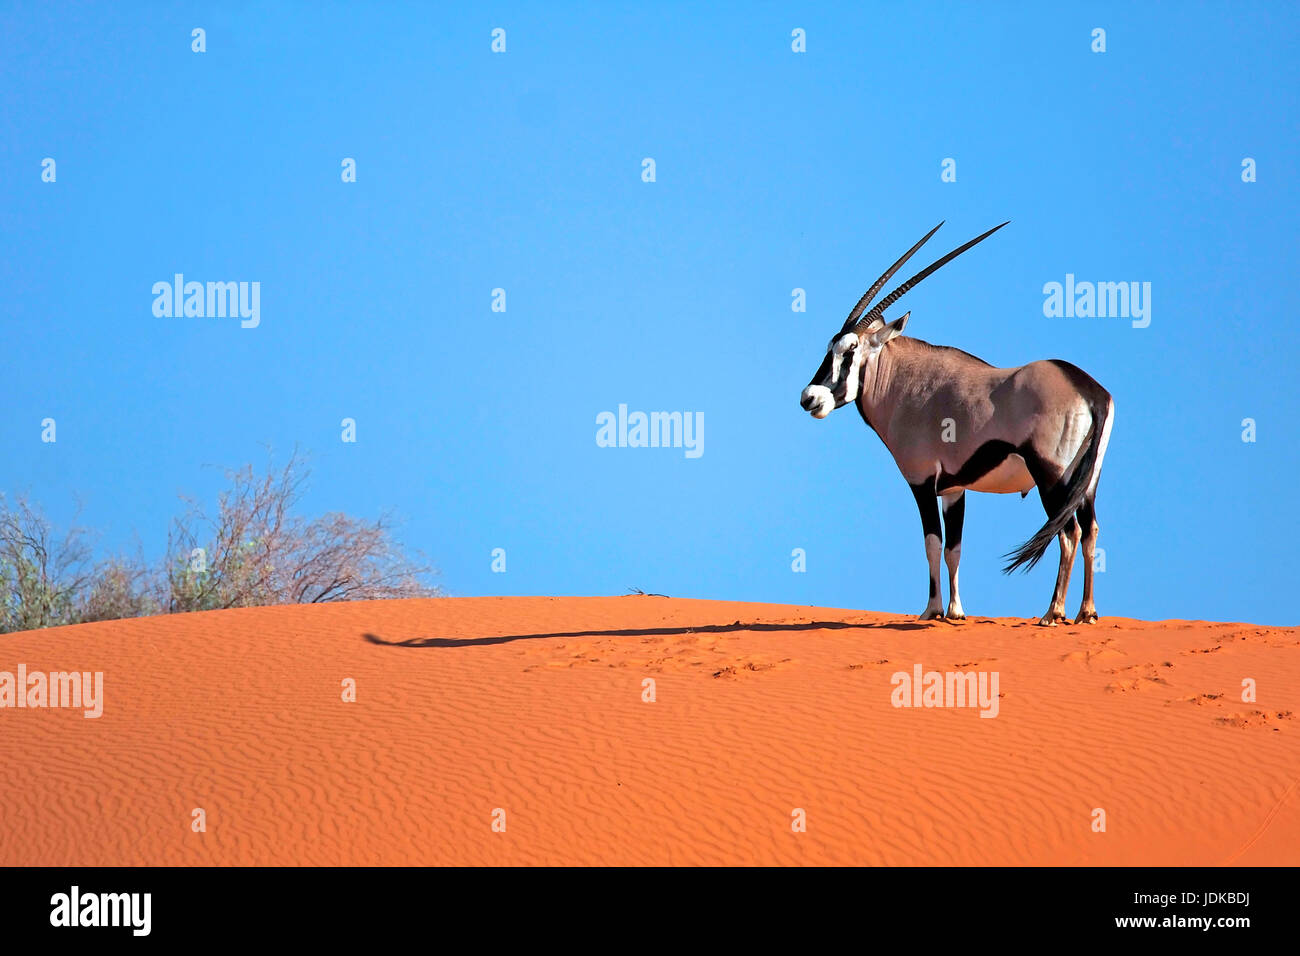 Oryx gazelle teht su una duna, Oryx Gazelle teht auf einer Duene Foto Stock